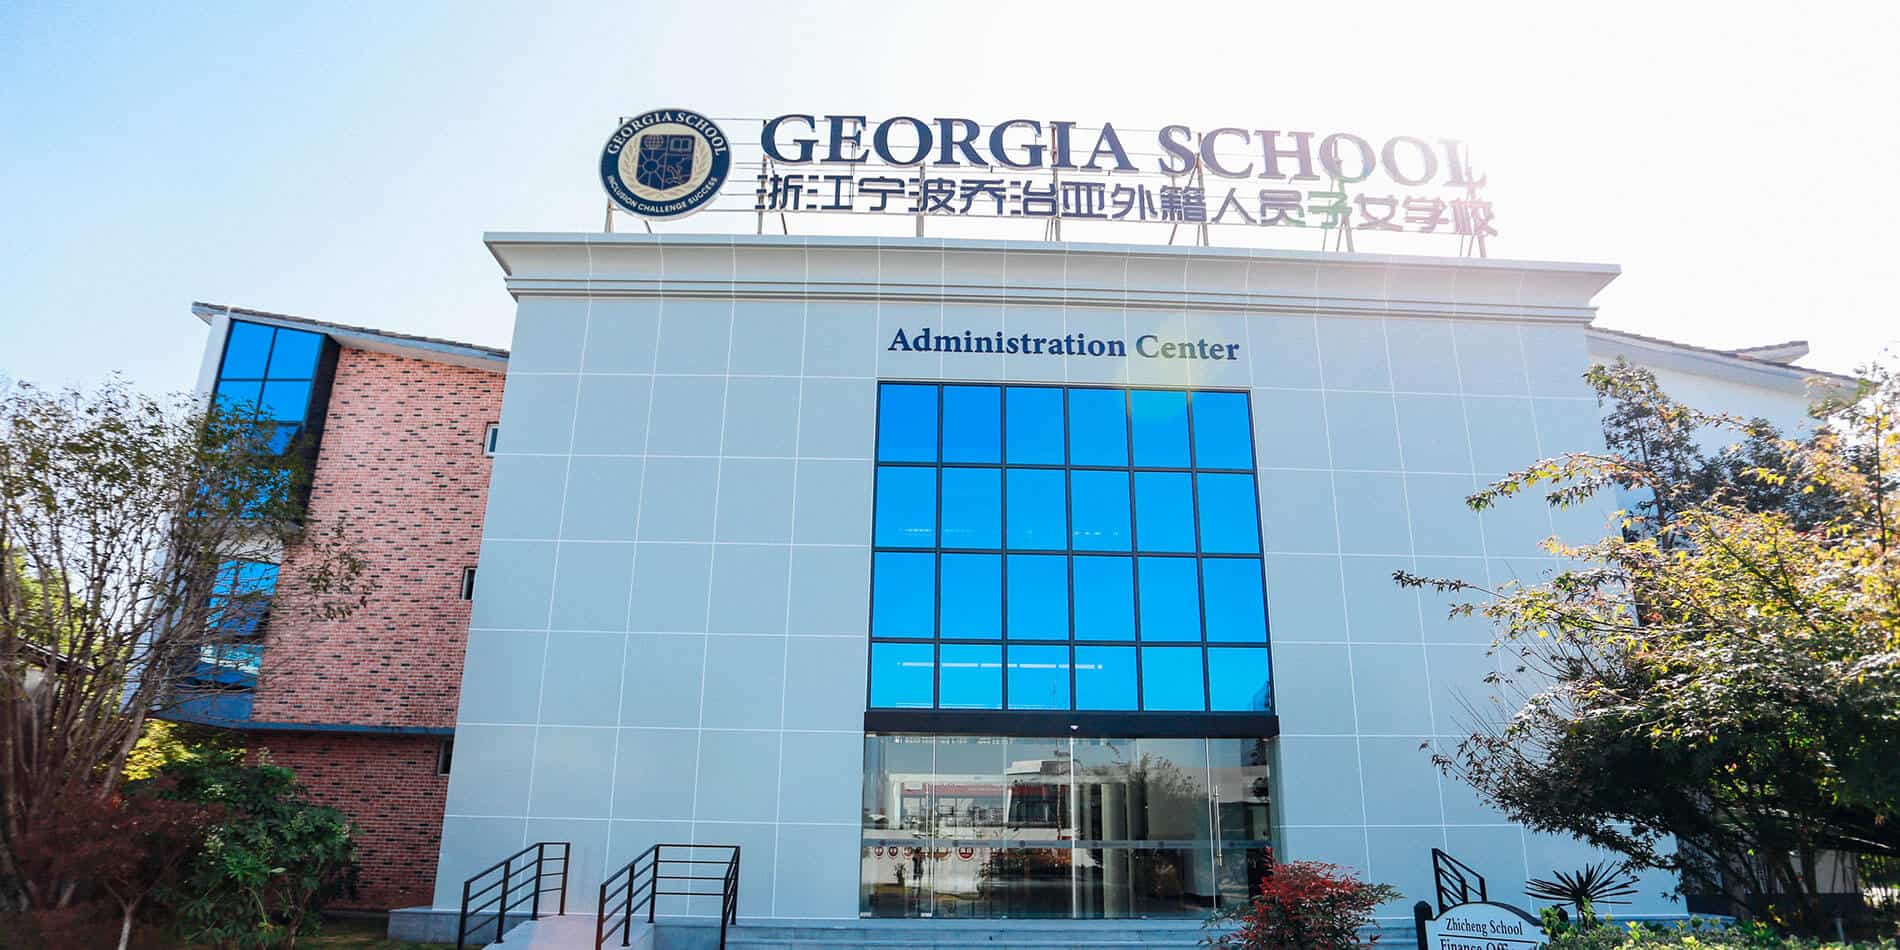 Georgia School Ningbo (GSN)